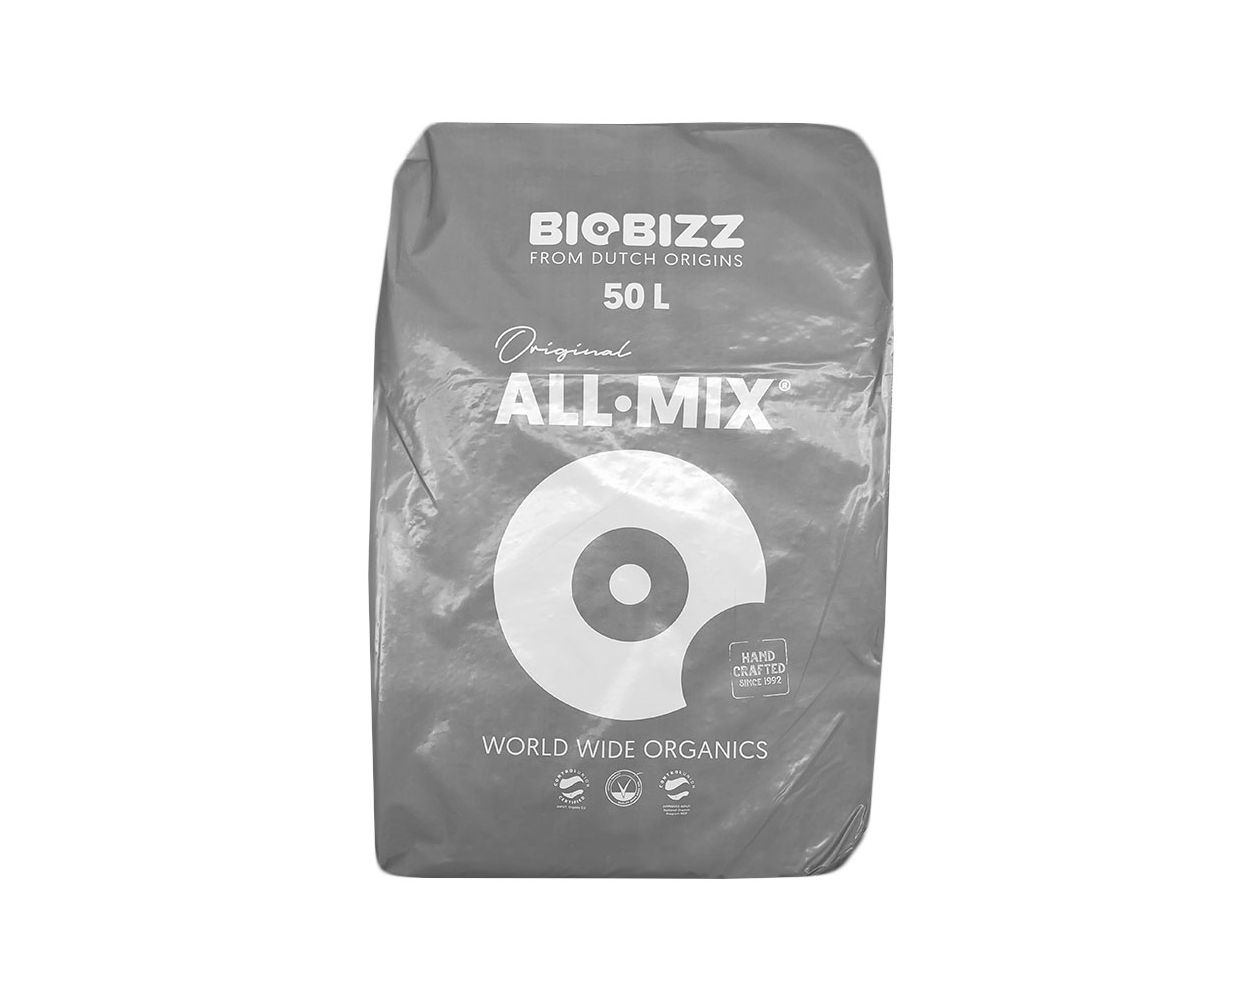 Fremskynde højt Øst Timor BioBizz All-Mix Soil 50L Bag